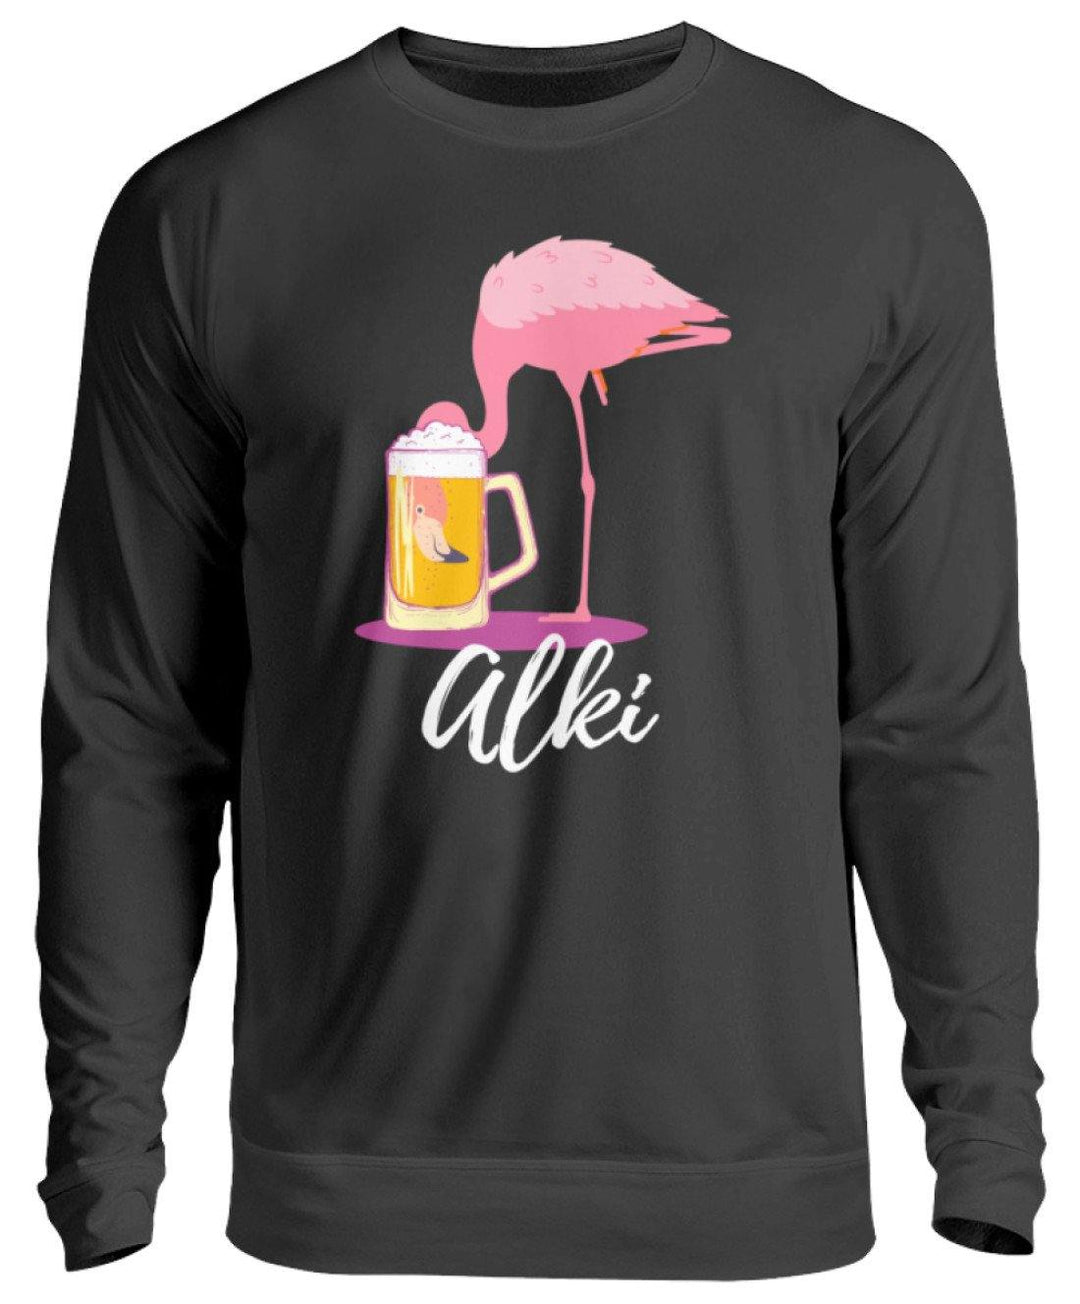 Flamingo Alki - Words on Shirt  - Unisex Pullover - Words on Shirts Sag es mit dem Mittelfinger Shirts Hoodies Sweatshirt Taschen Gymsack Spruch Sprüche Statement